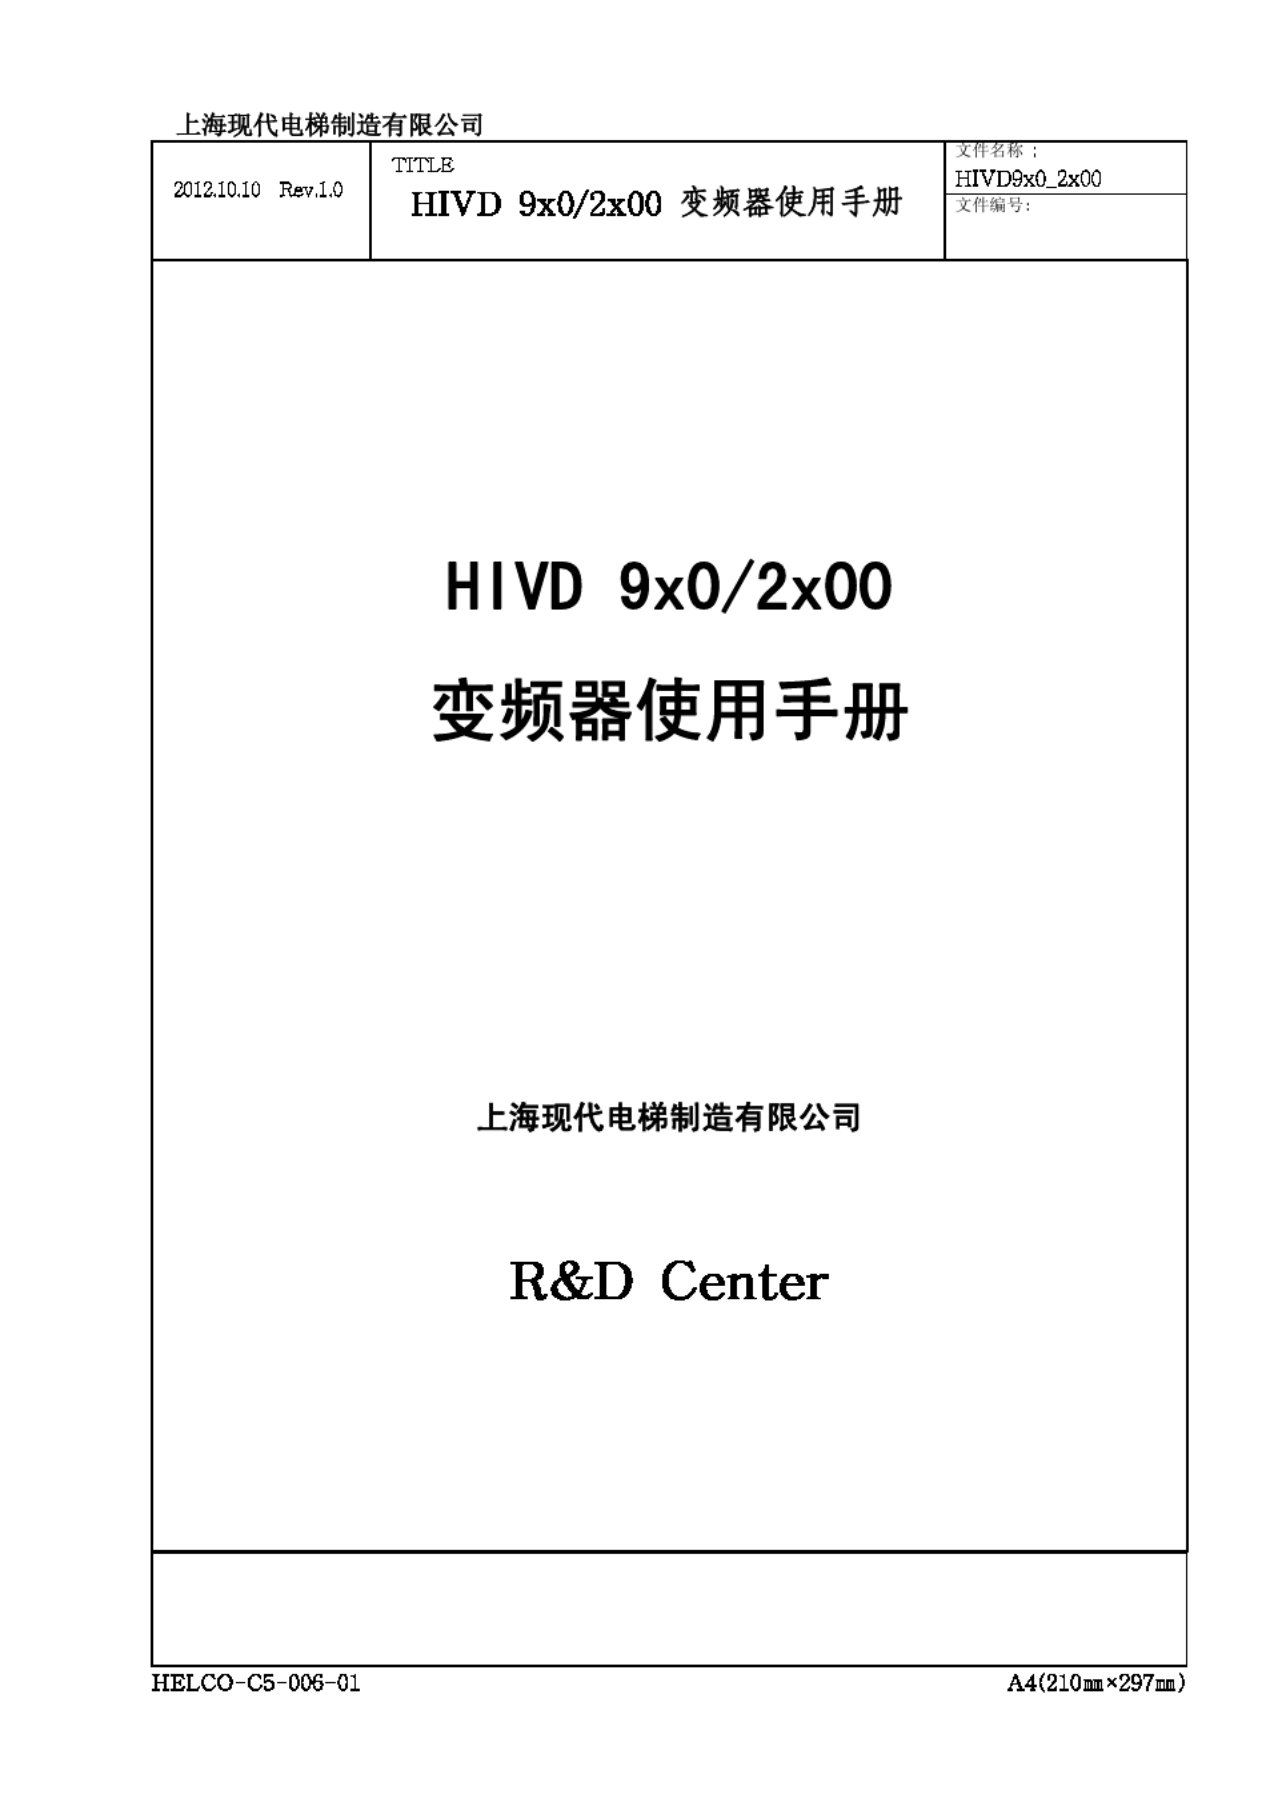 现代变频器HIVD 9x0_2x00中文